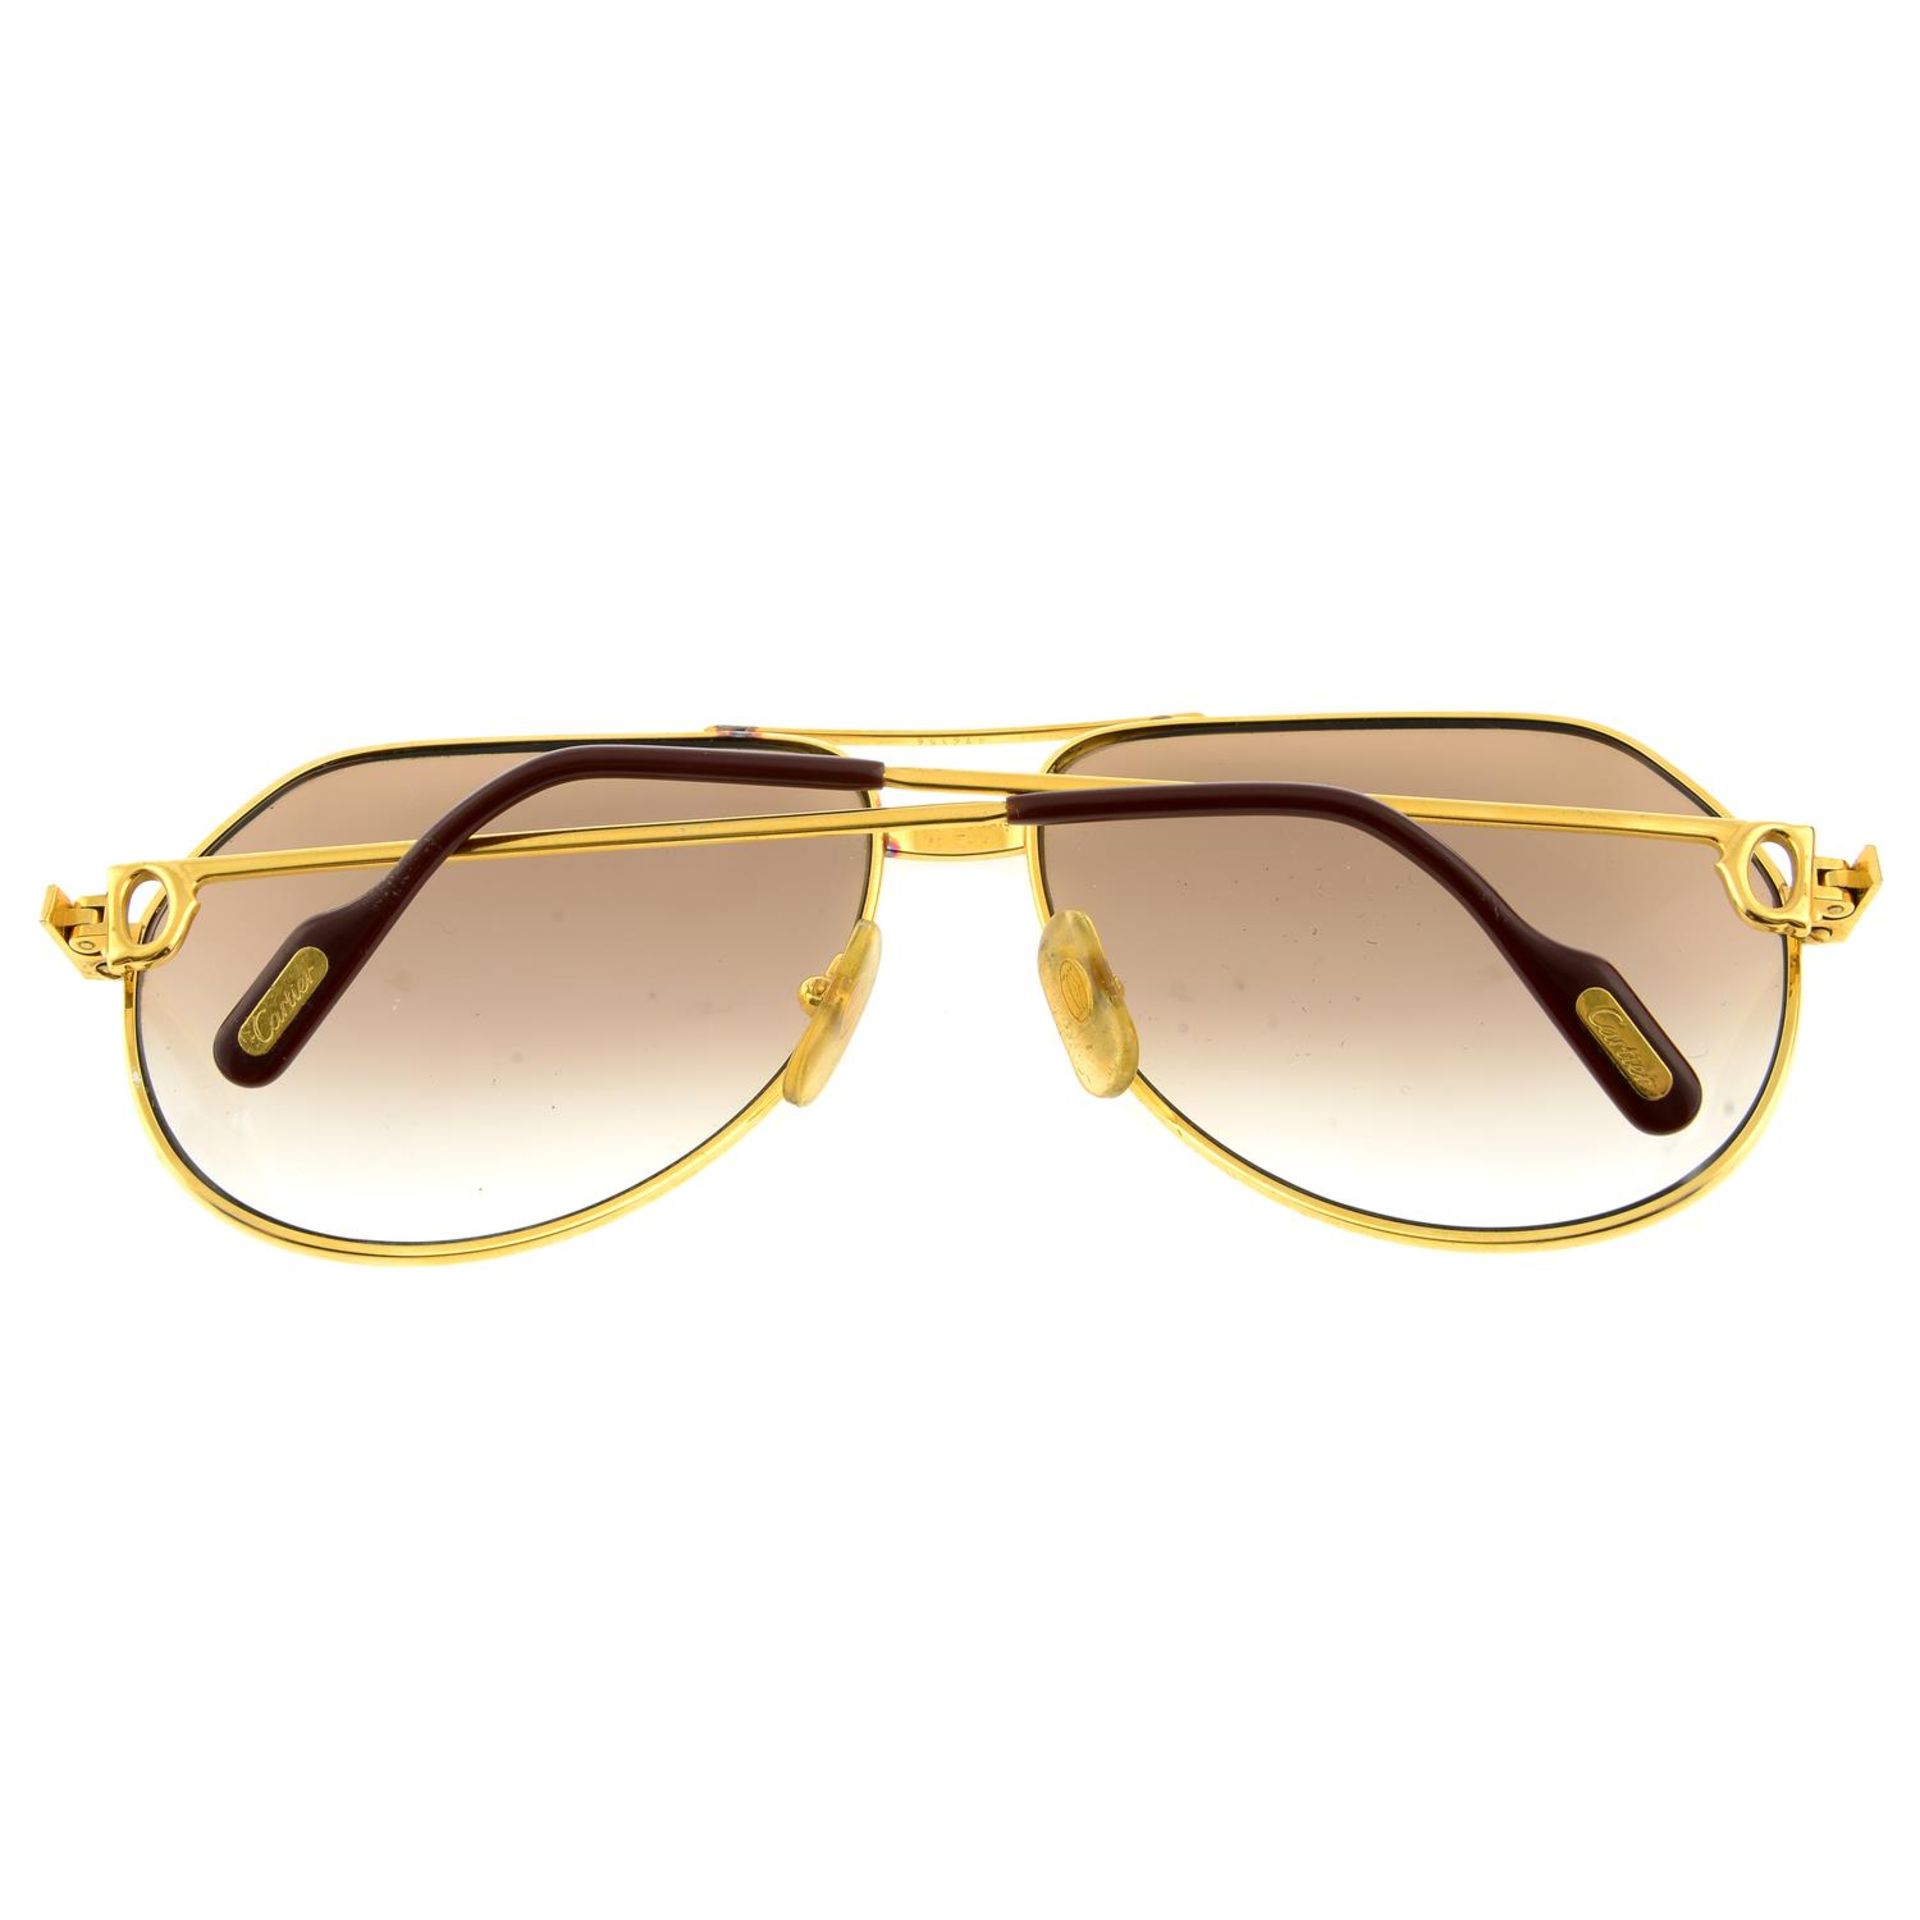 CARTIER - a pair of Vendome Santos sunglasses. - Image 2 of 3